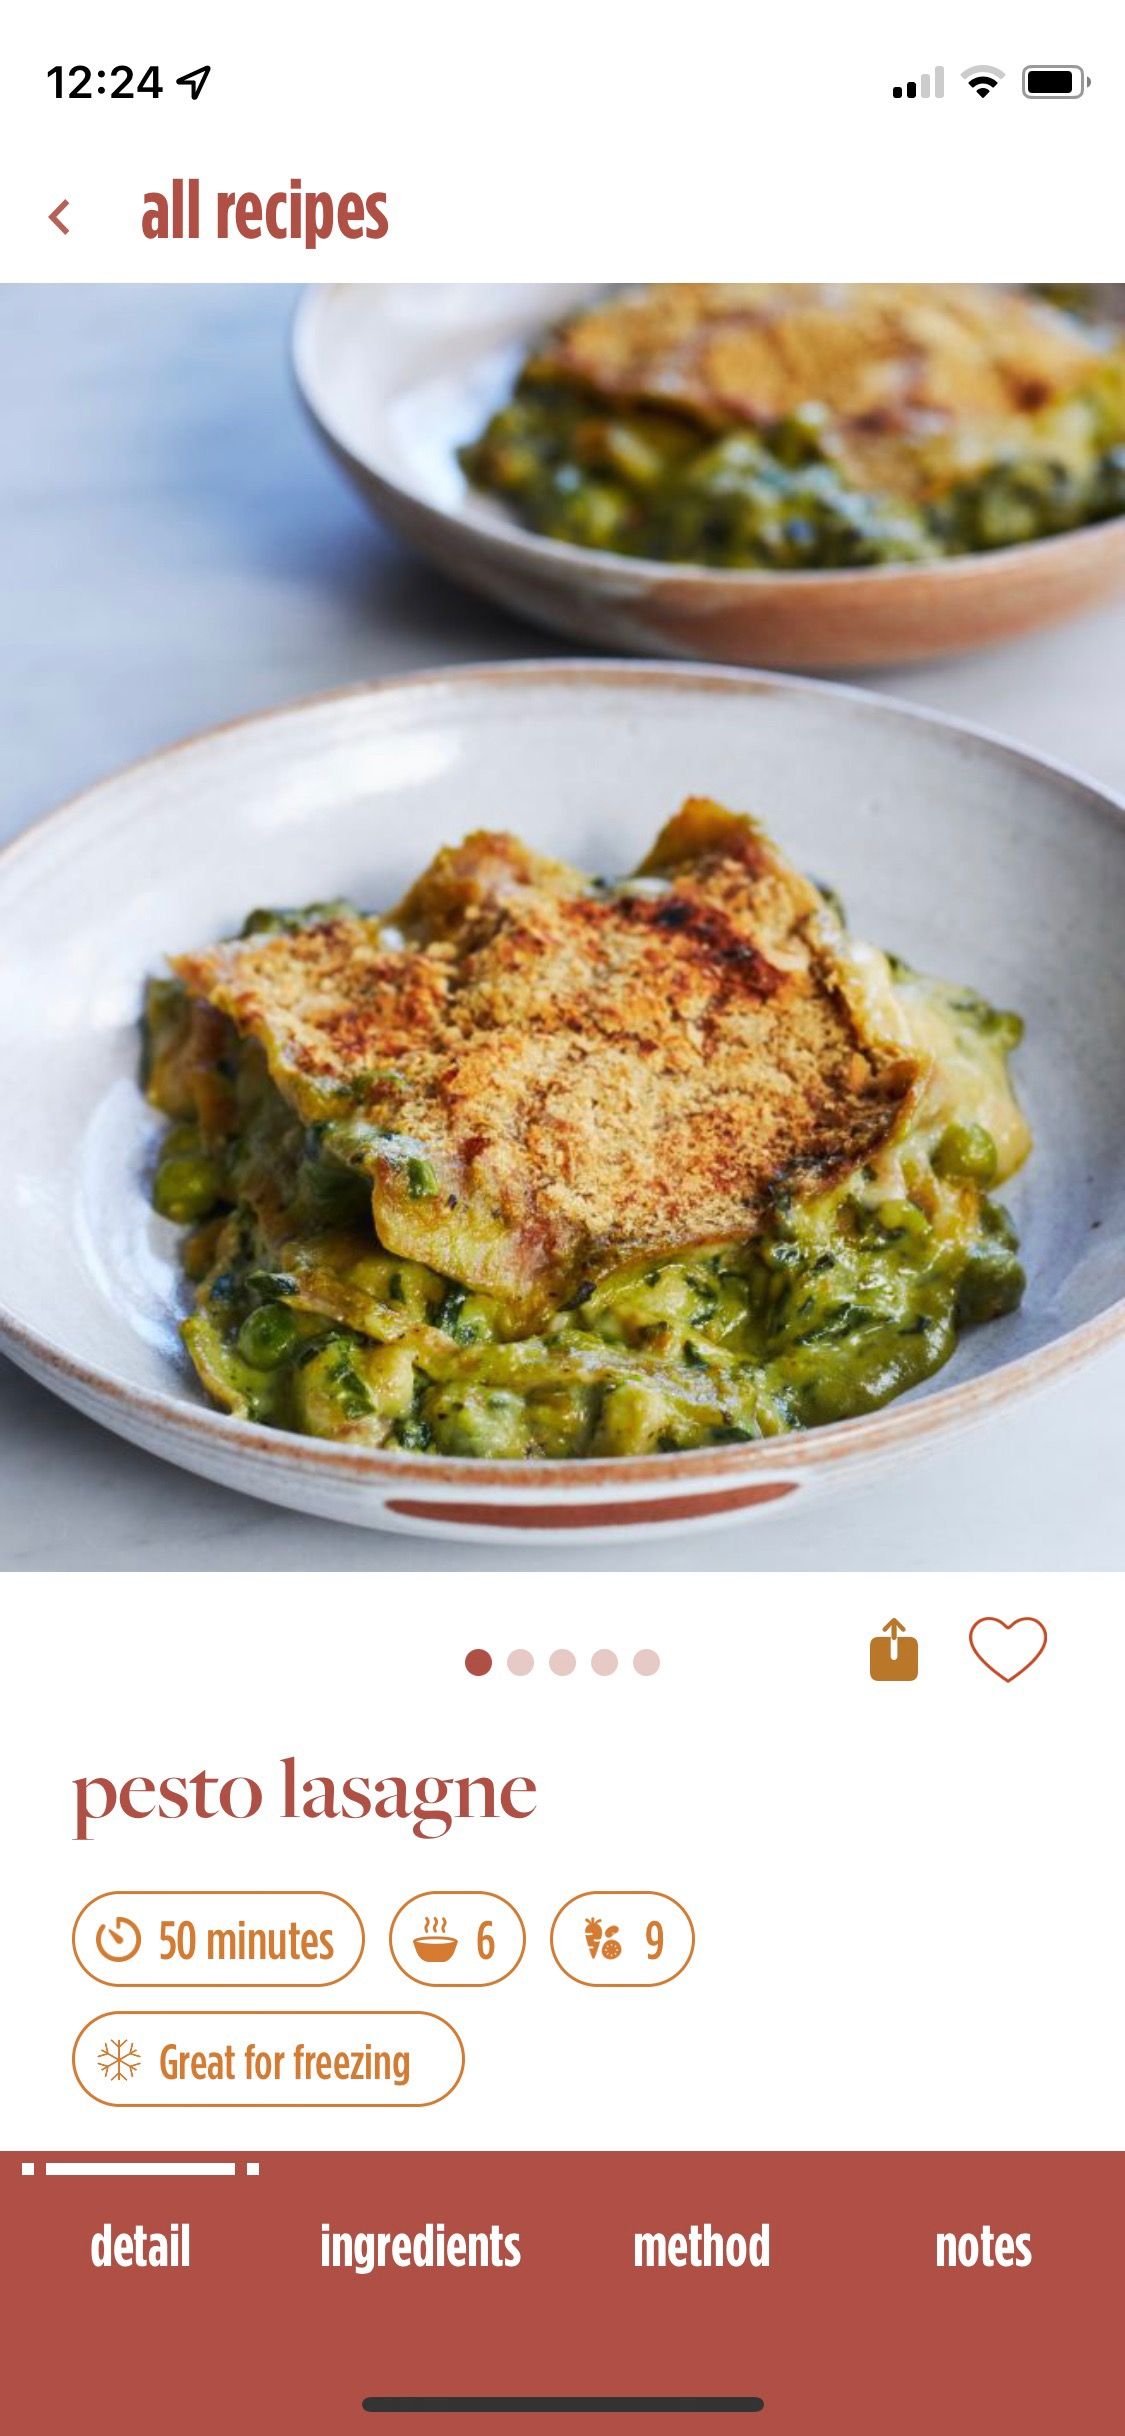 Screenshot of Feel Better app showing sample pesto lasagne recipe